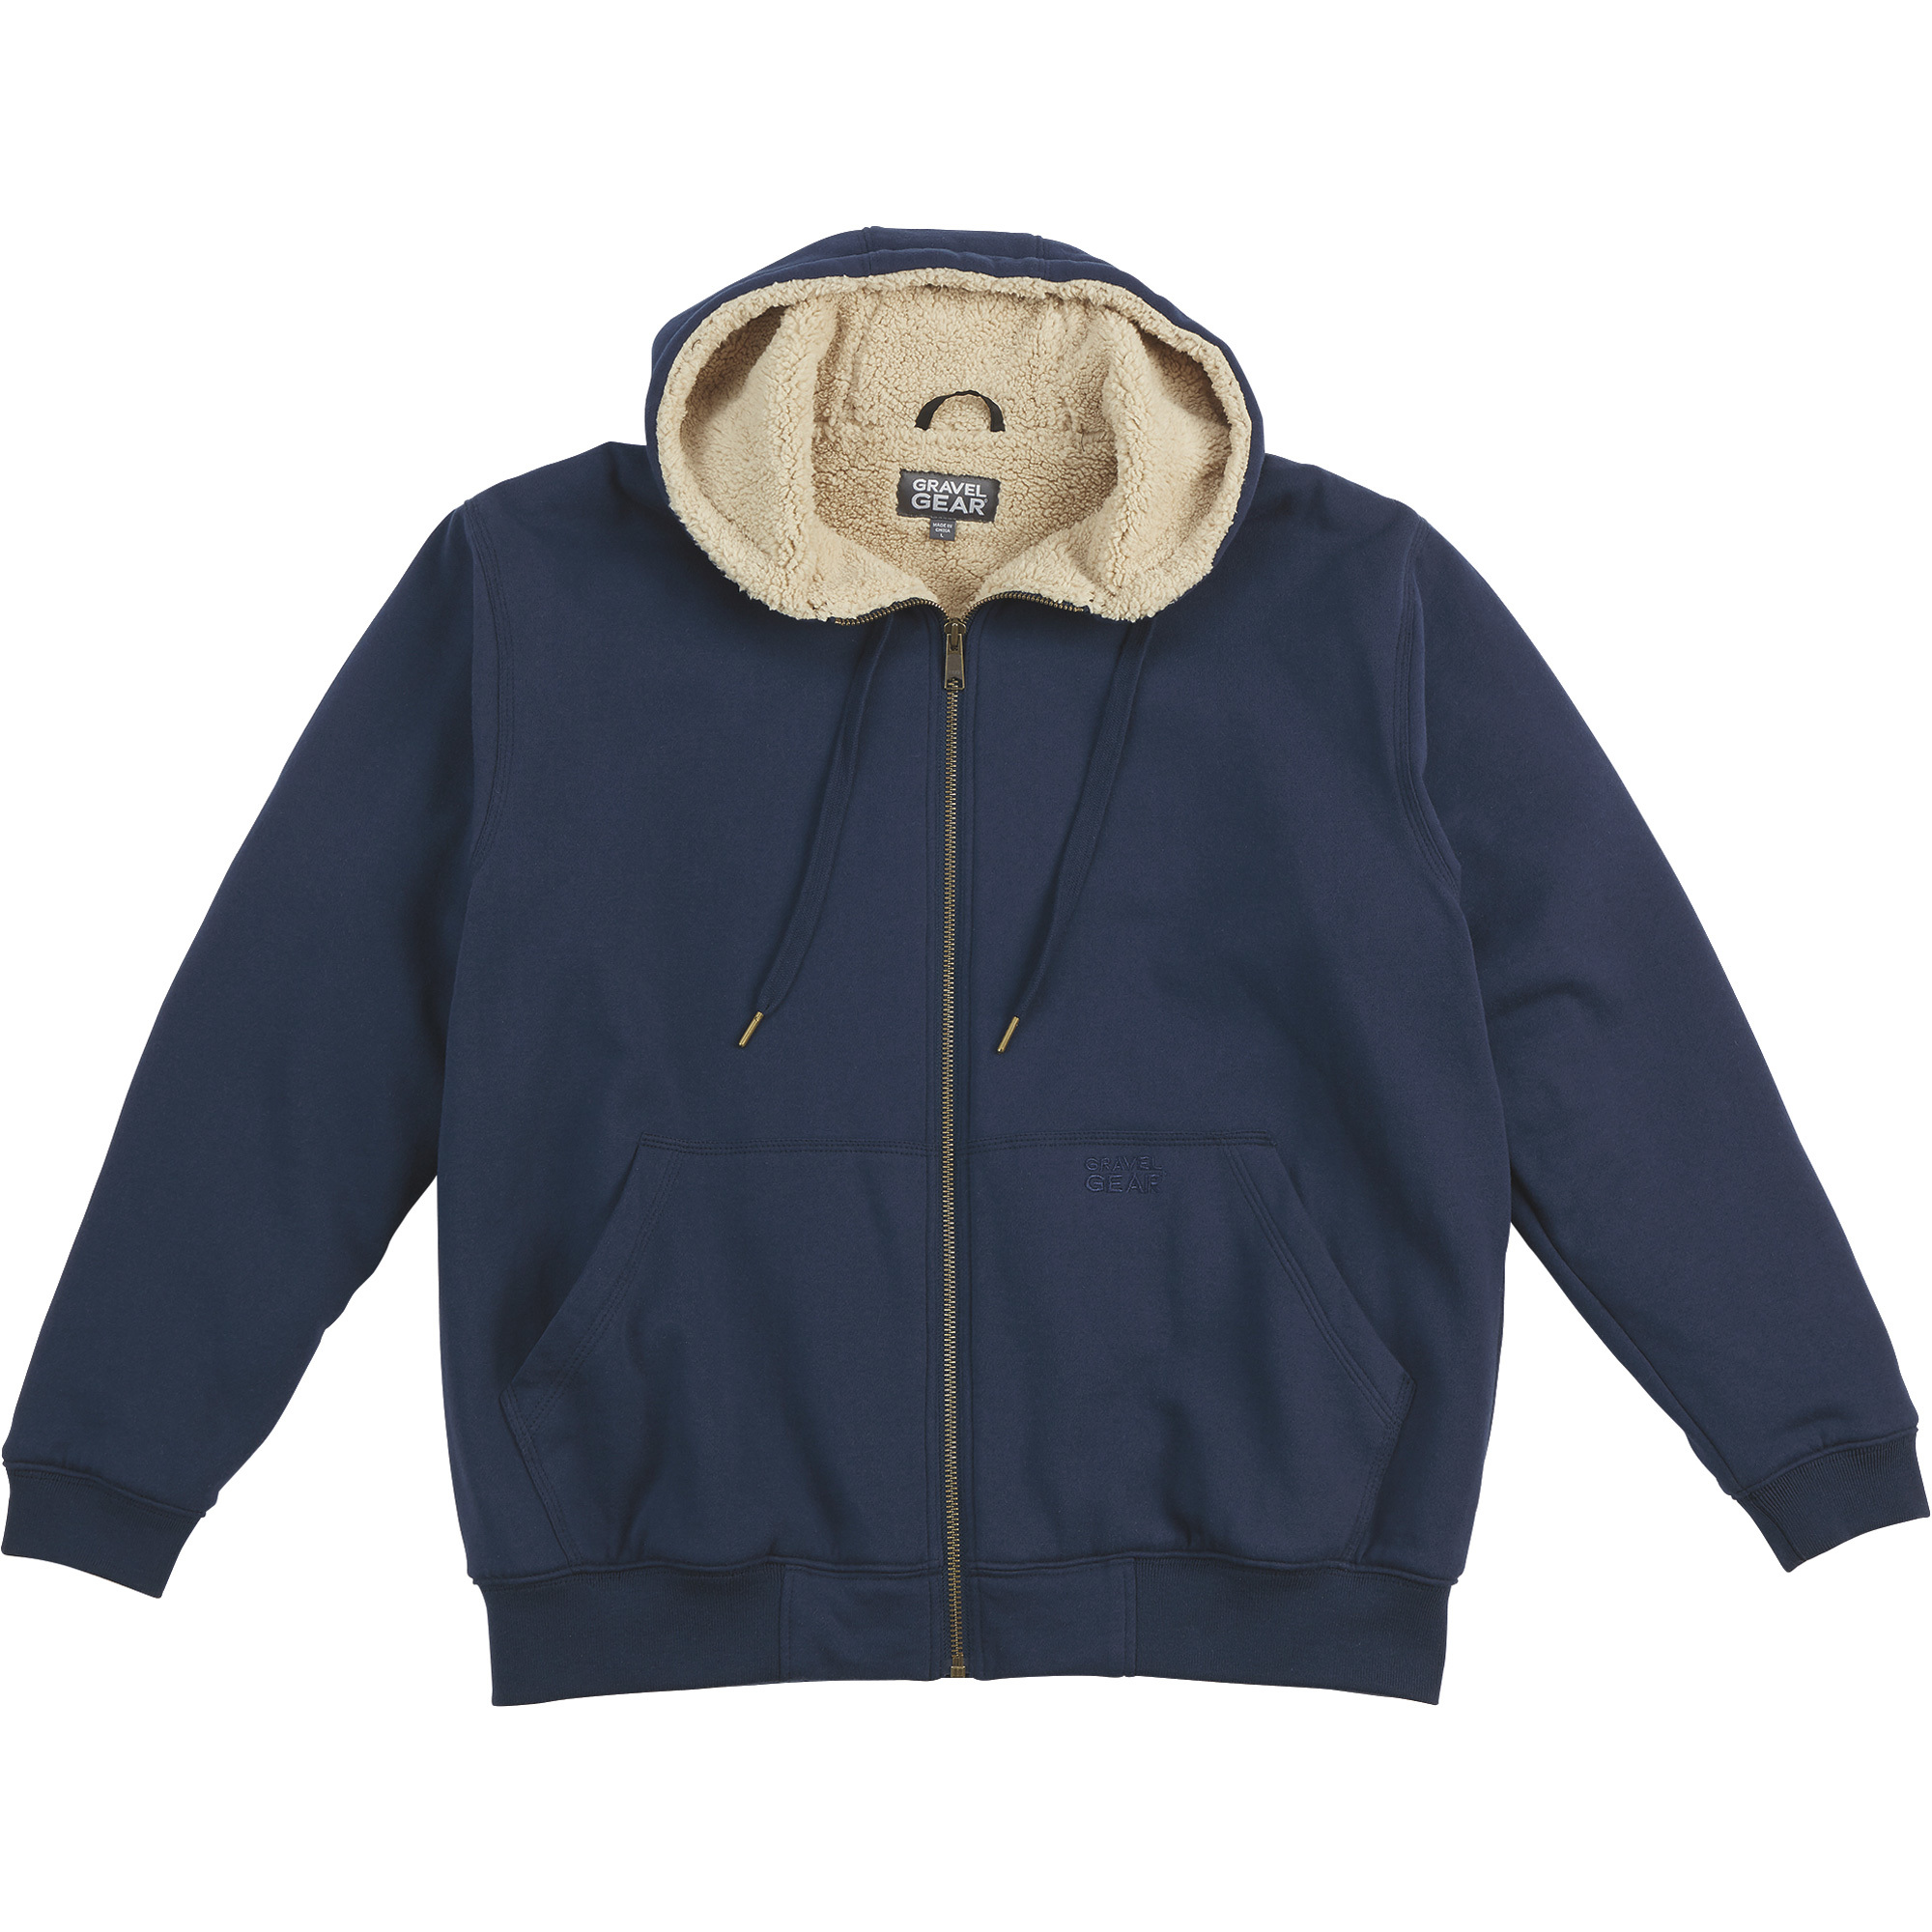 Gravel Gear Men's Sherpa-Lined Full-Zip Hooded Sweatshirt â Navy, XL